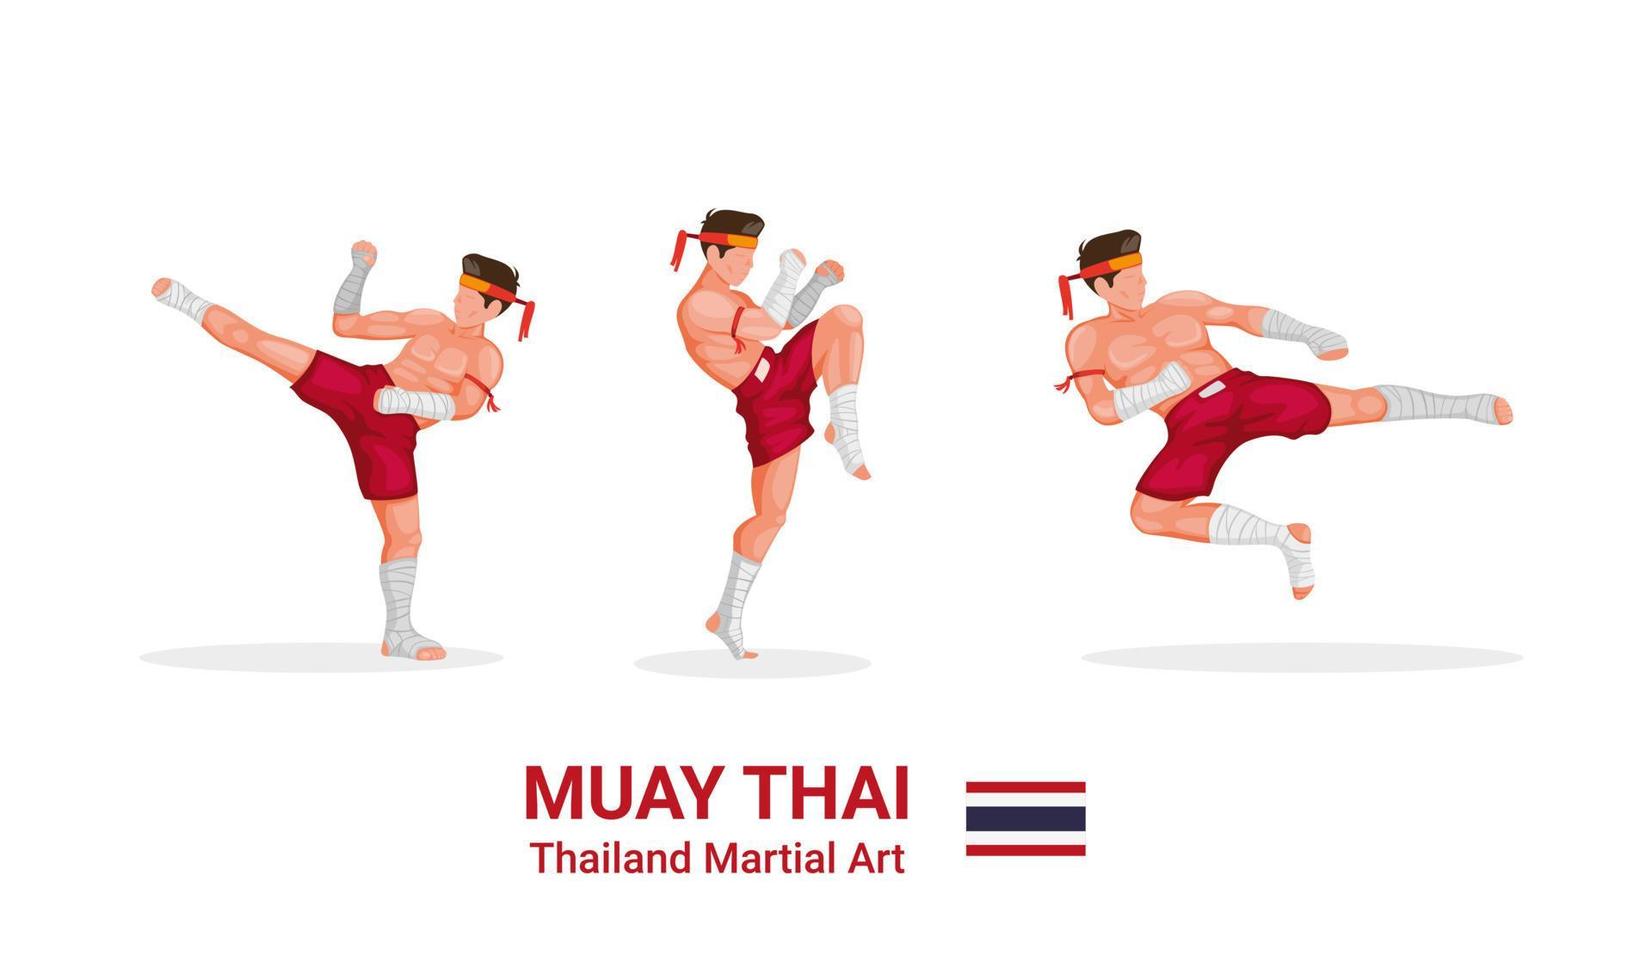 Muay thai - thailändisches Boxen traditionelle Kampfkunst aus Thailand Figurensammlung Icon Set in Cartoon flache Illustration Vektor isoliert in weißem Hintergrund